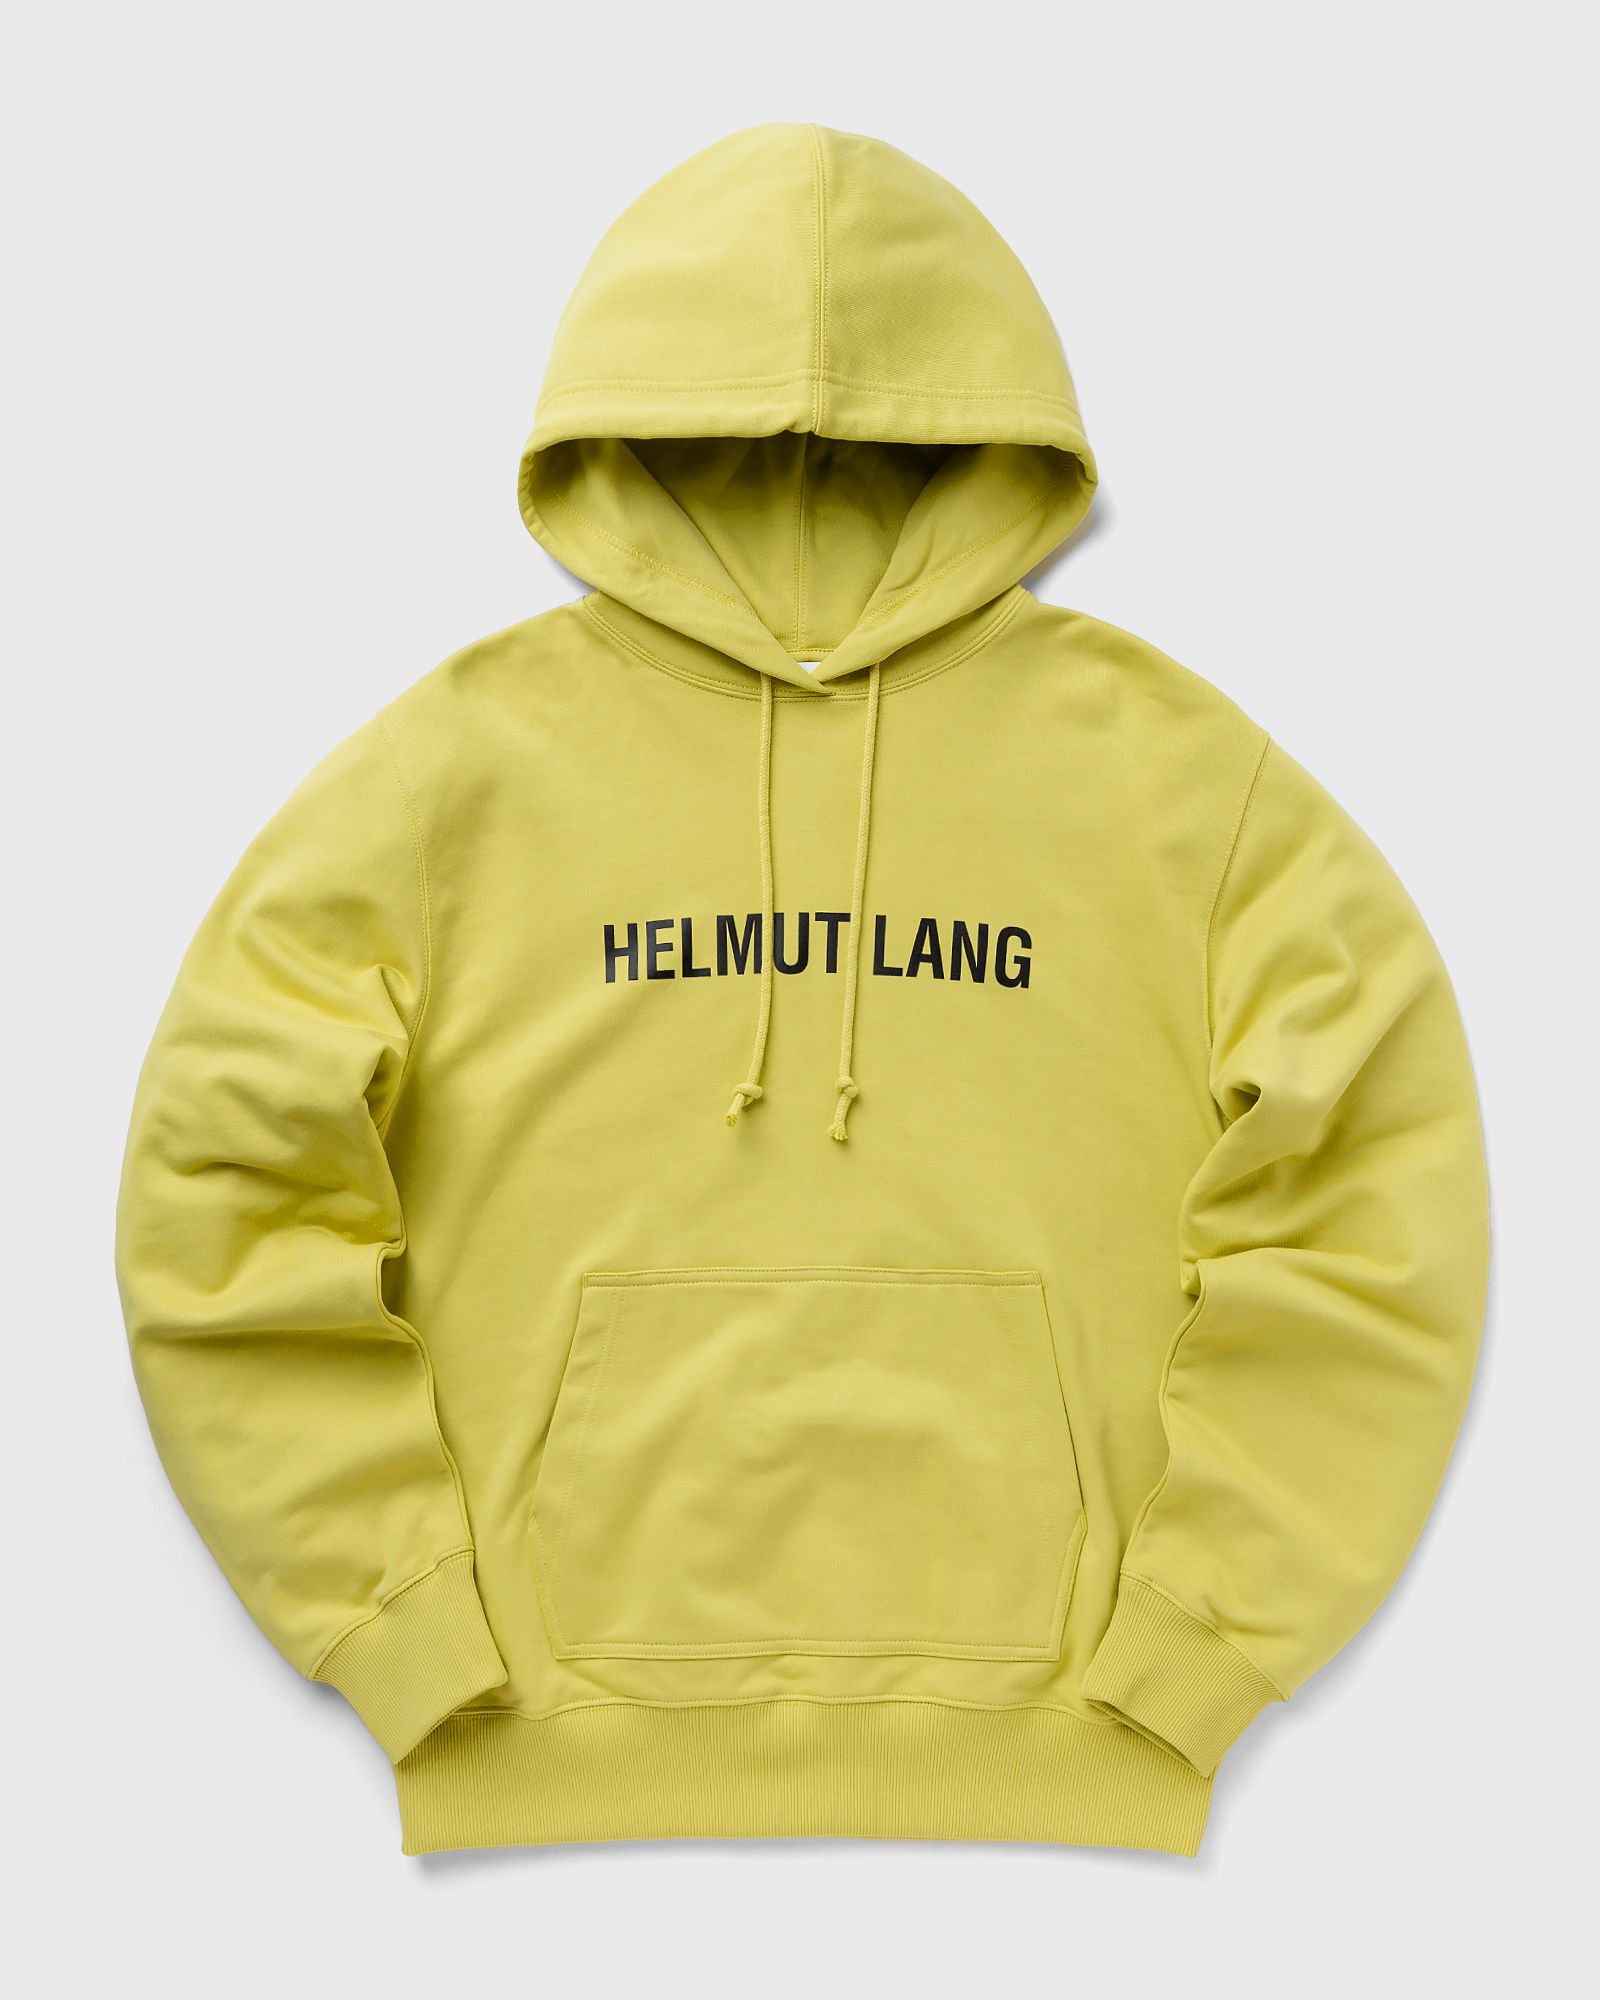 Helmut Lang CORE HOODIE 2 men Hoodies yellow in Größe:S von Helmut Lang